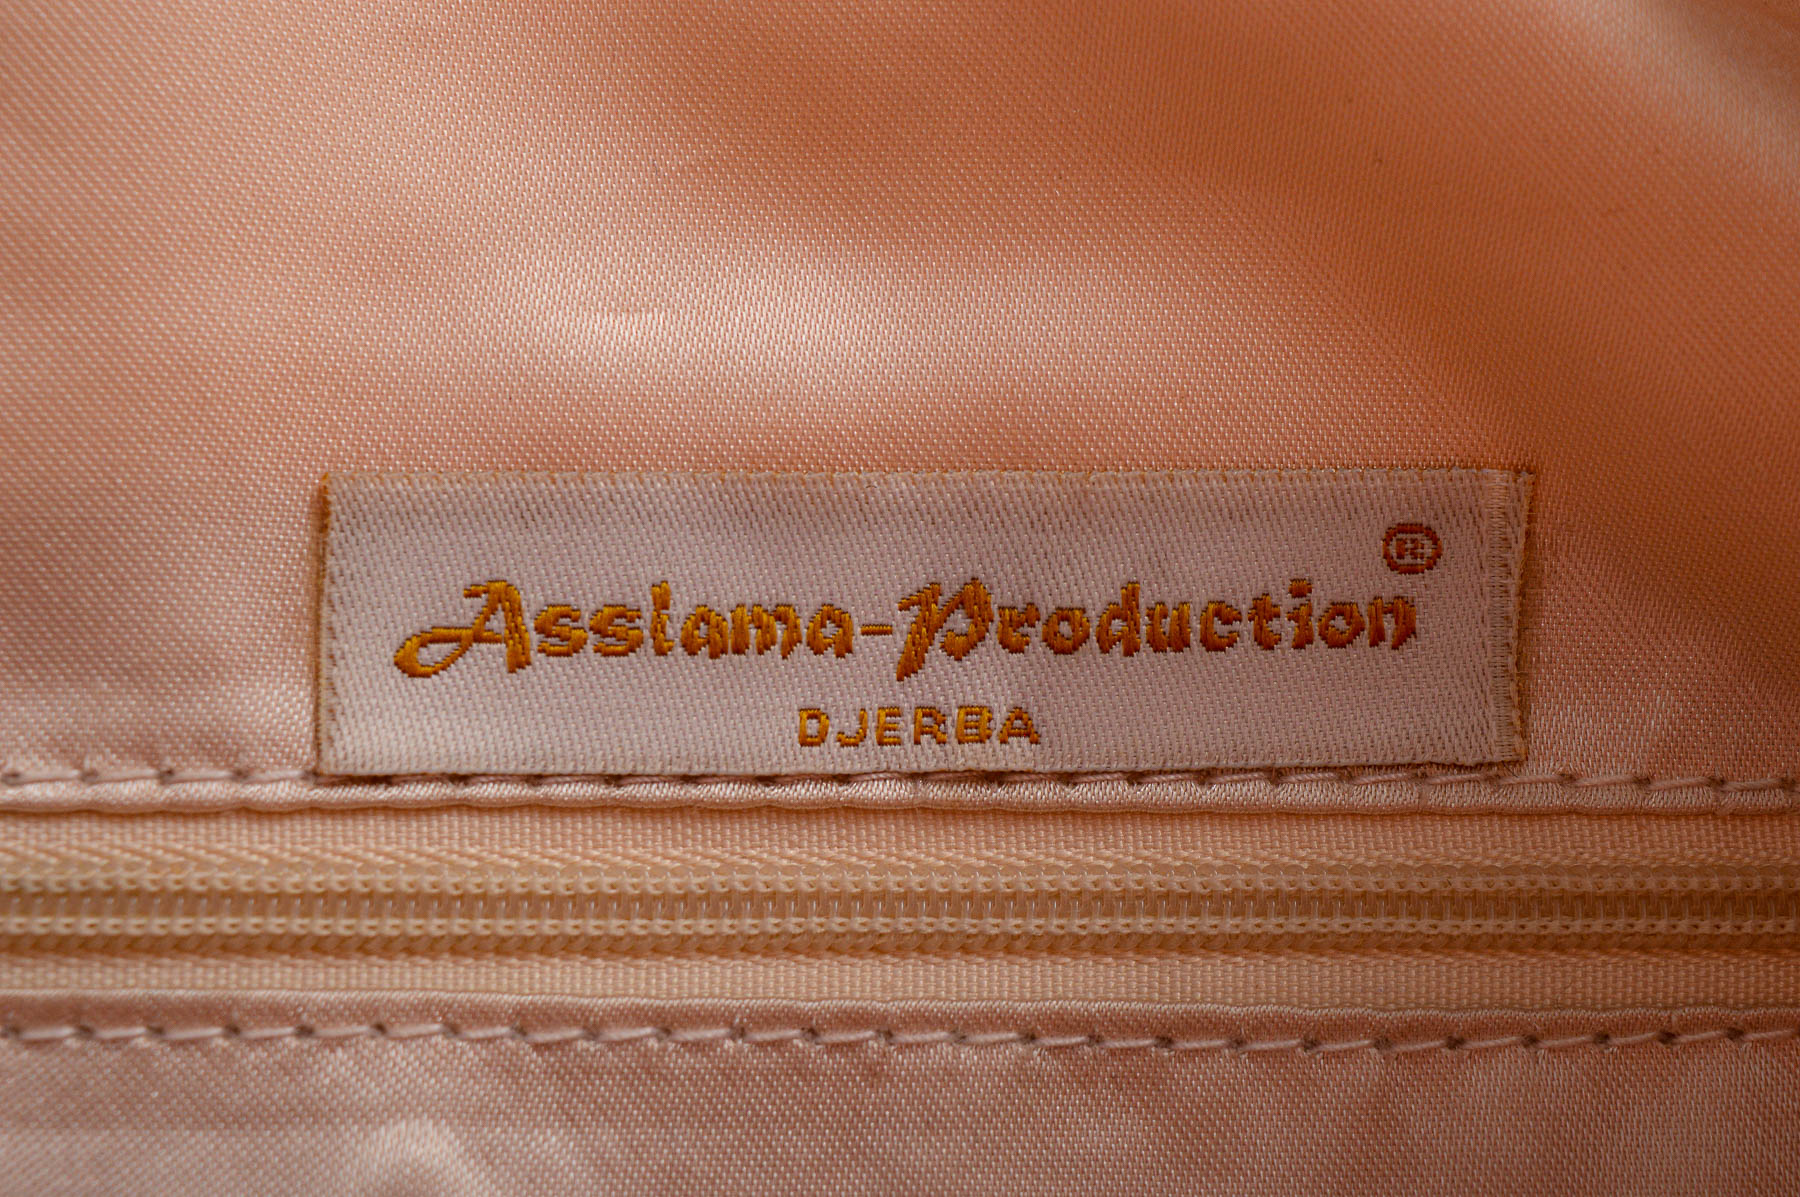 Τσάντα για ψώνια - Assiama - Production - 3